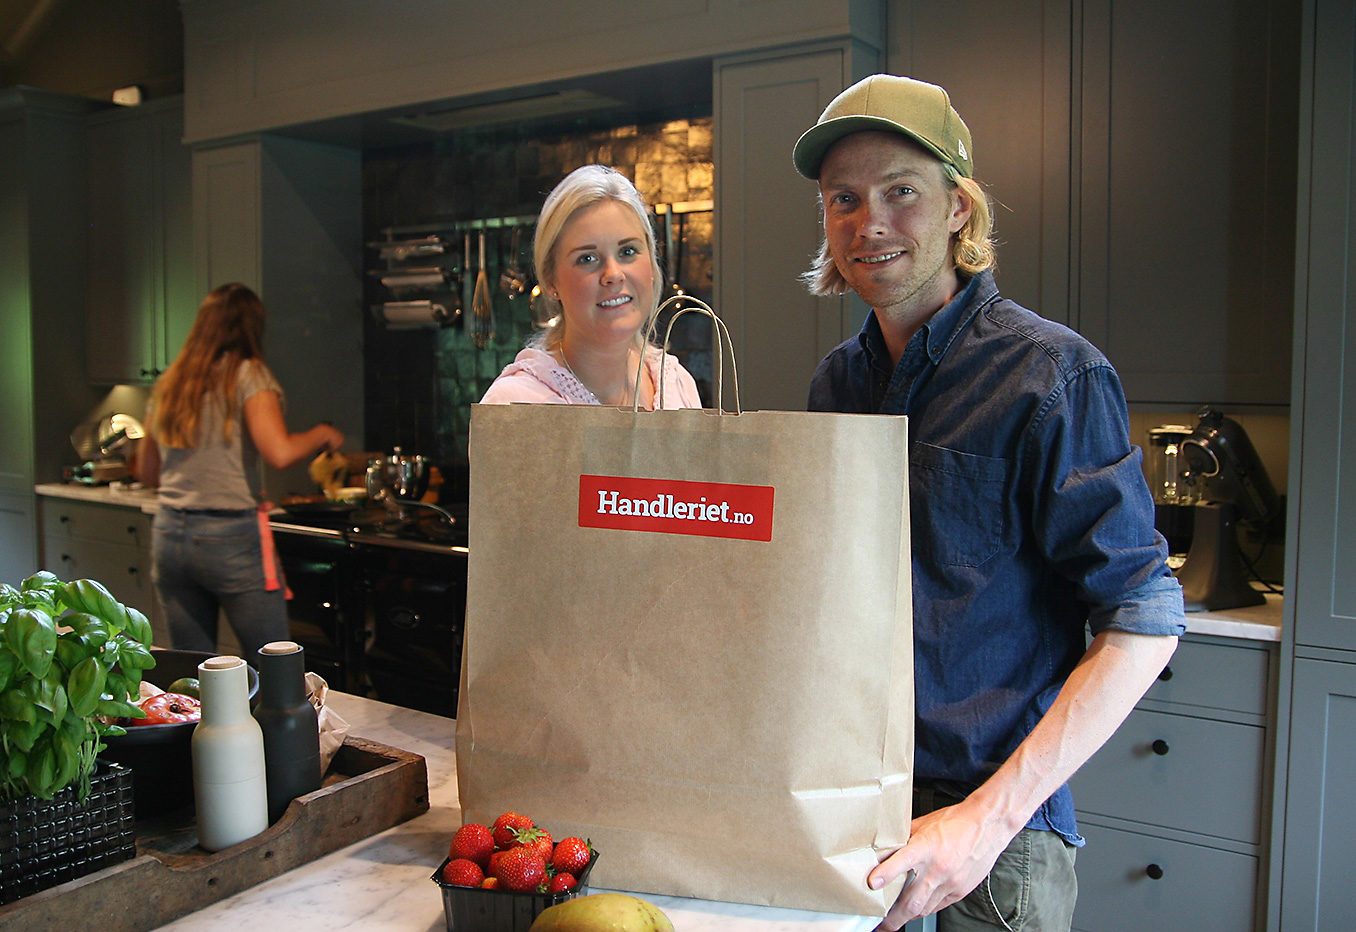 Bjørn Einar Romøren og kona Martine får mat levert fra Handleriet.no